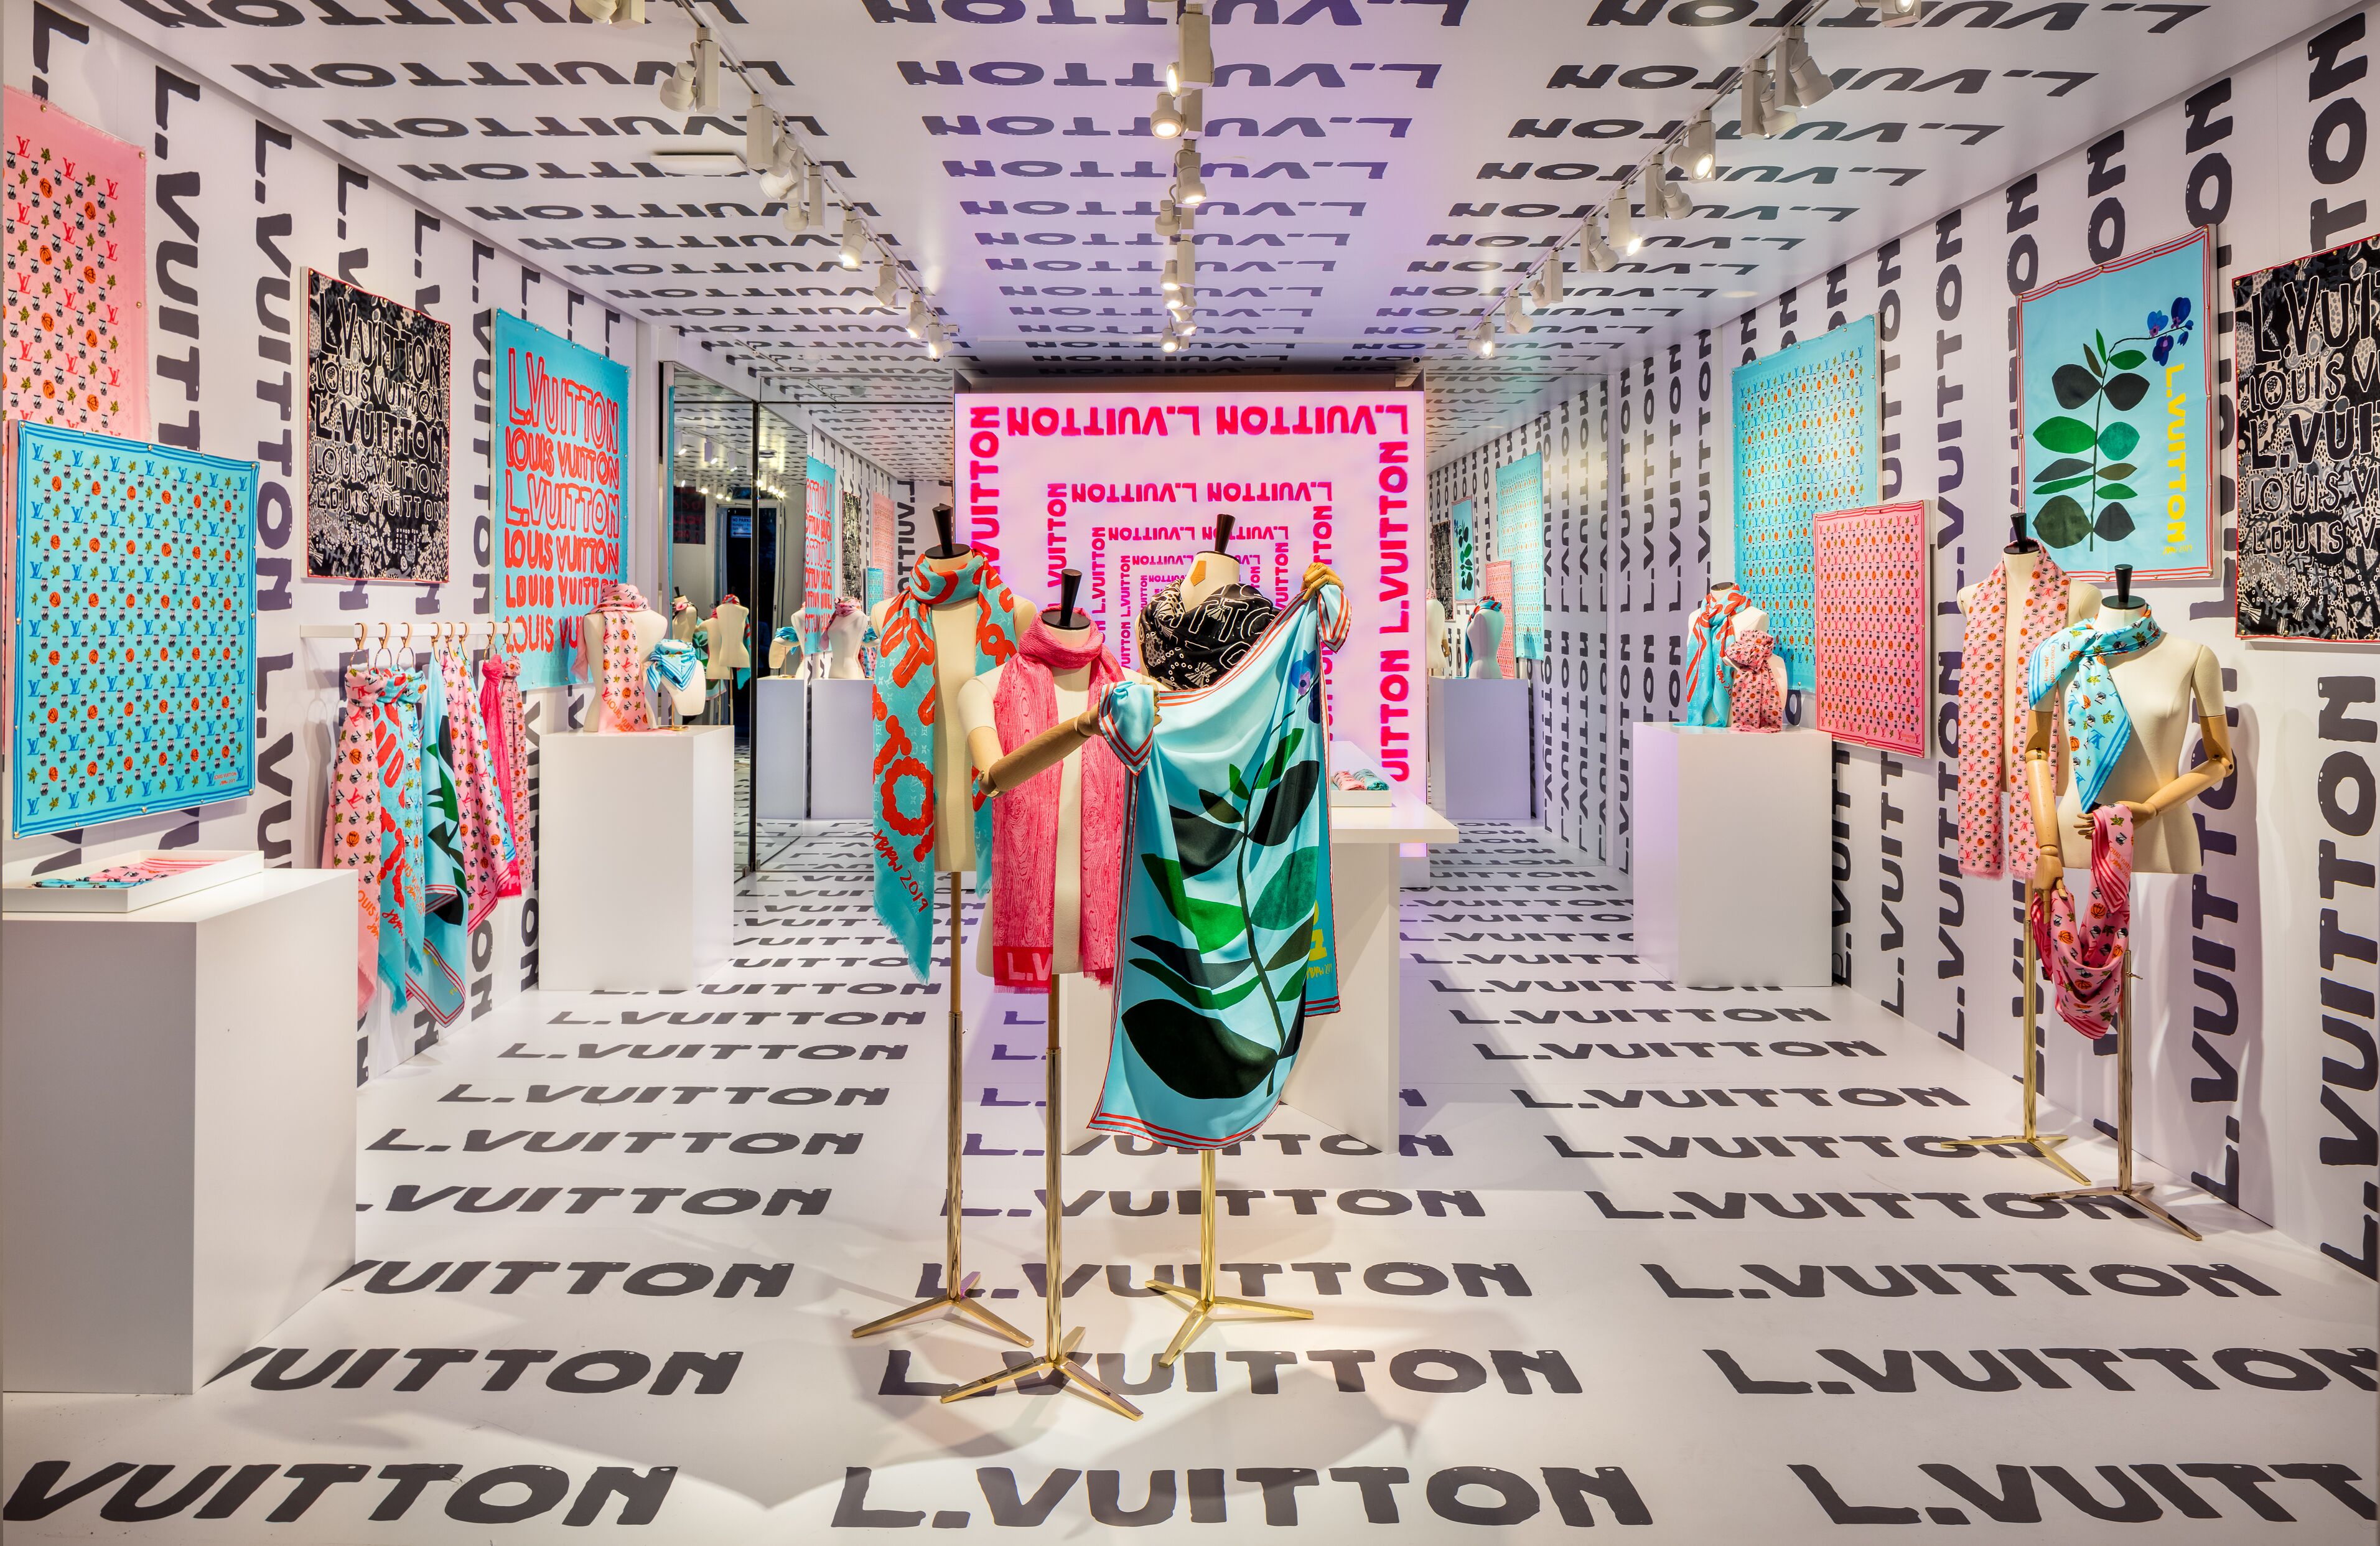 Louis Vuitton Pop Up Store Los Angeles Ca